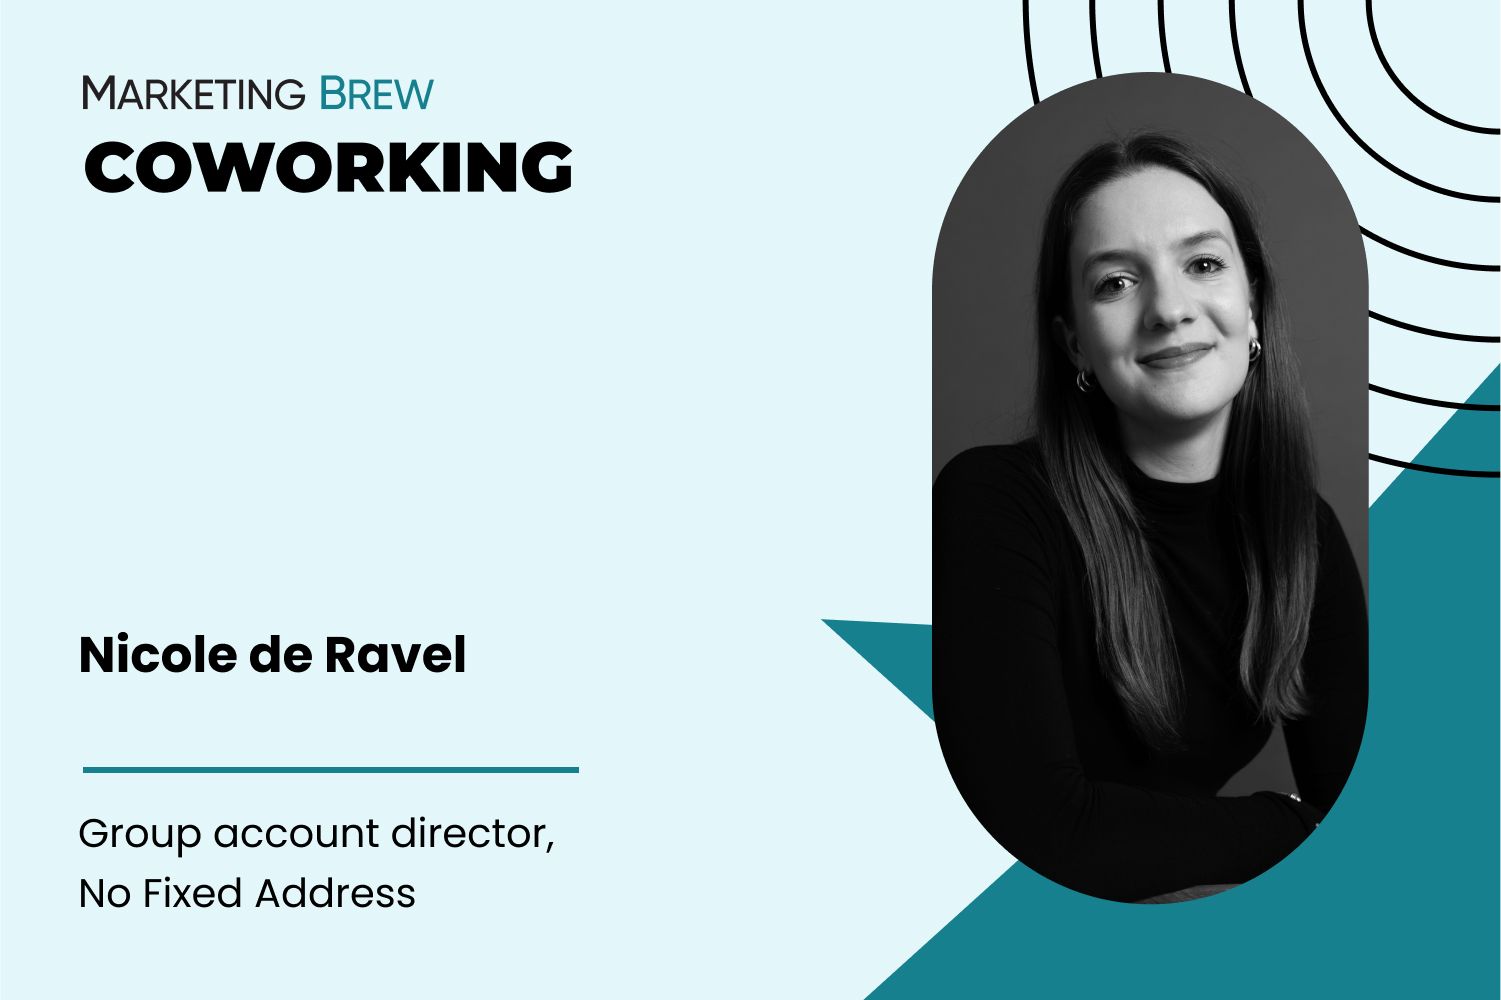 Nicole de Ravel in Marketing Brew's Coworking series